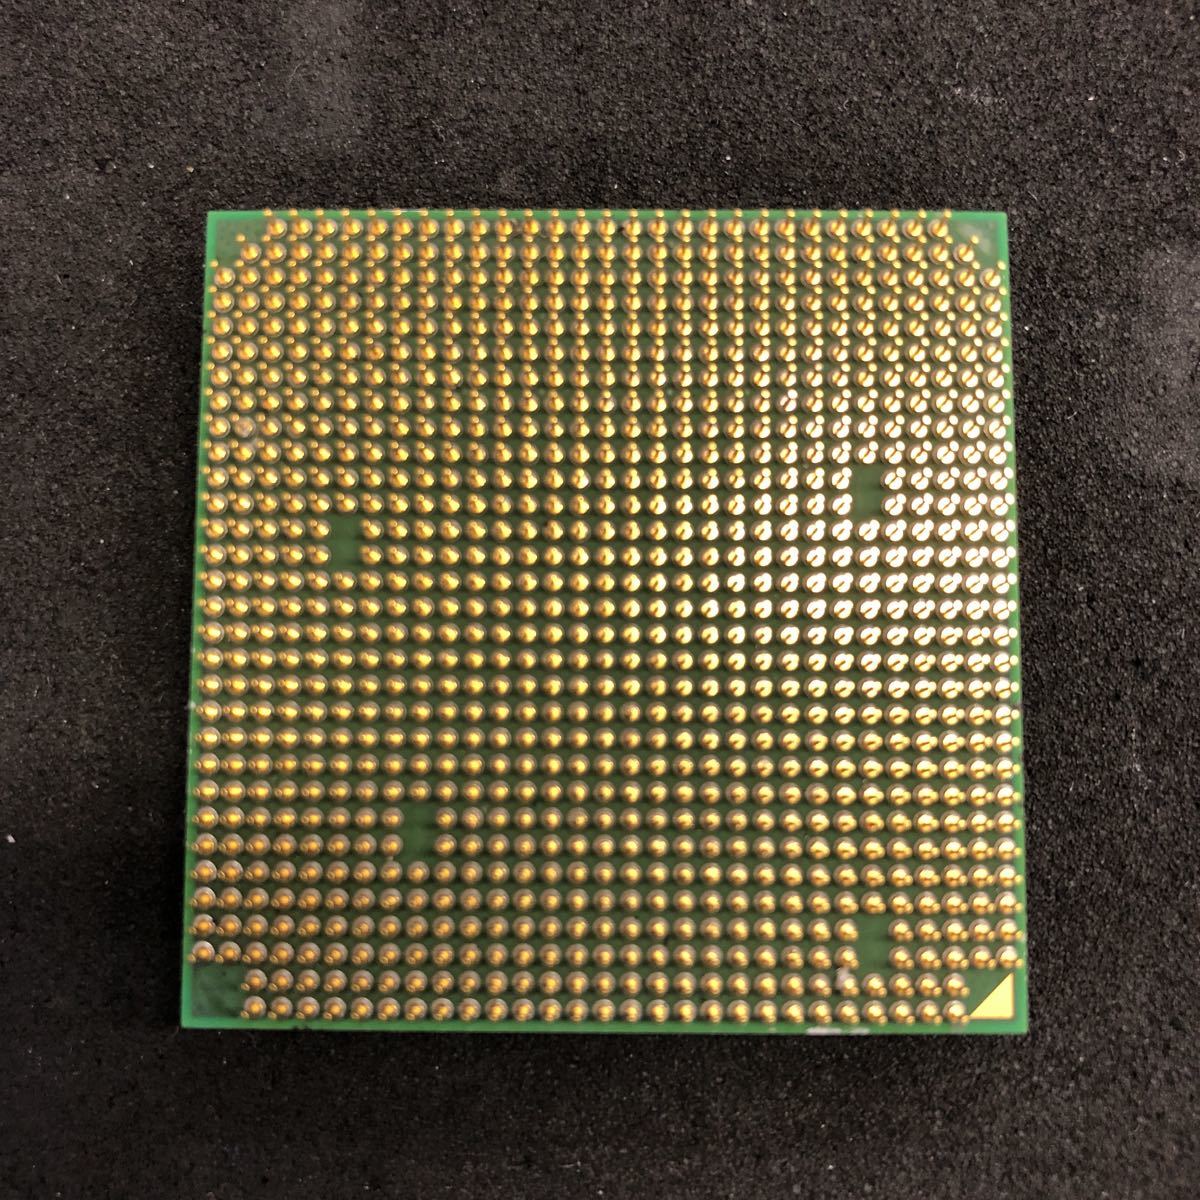 ADM Athlon 64の画像2